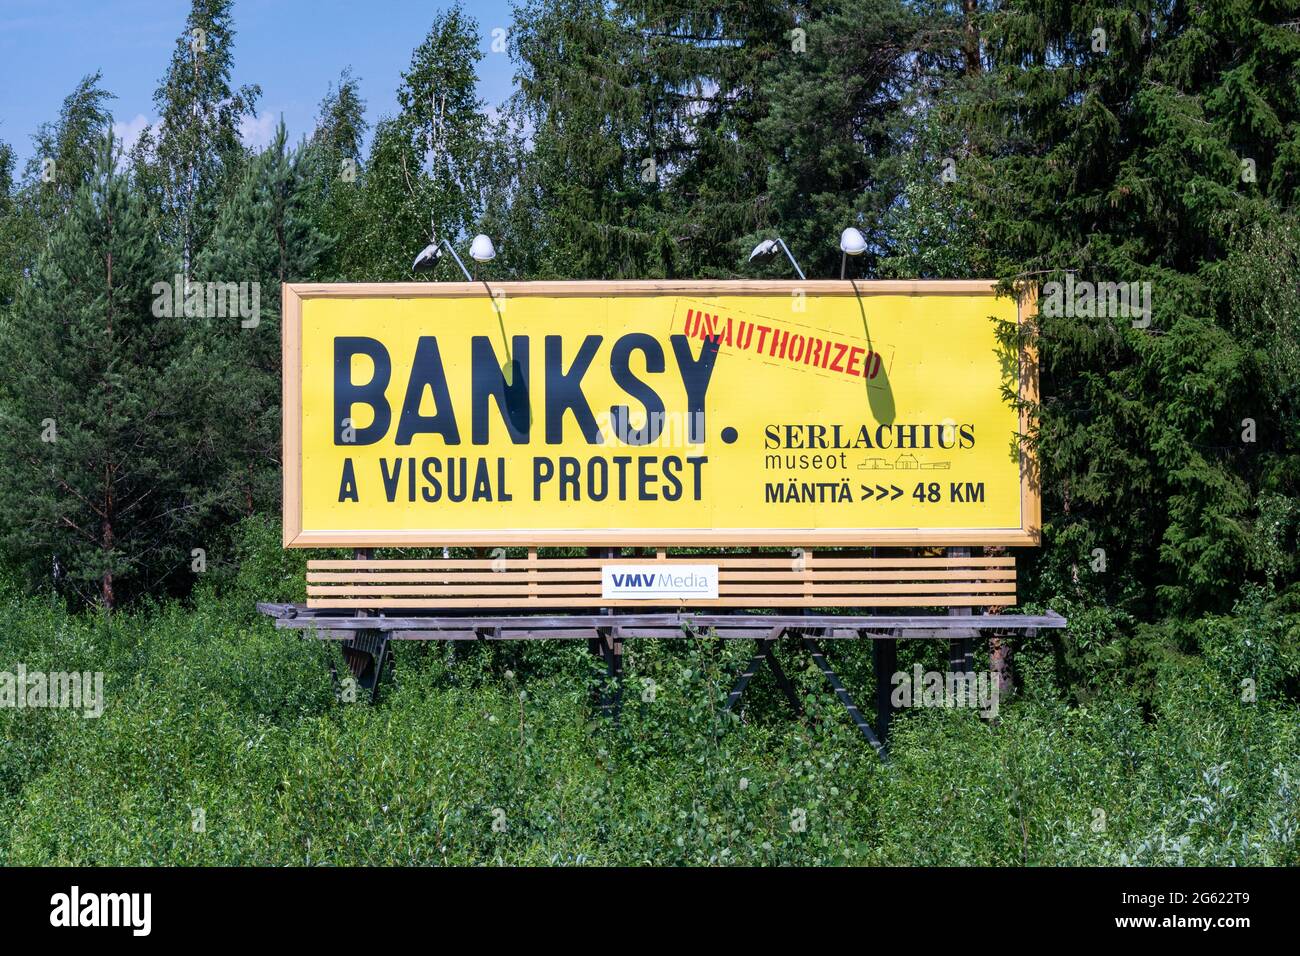 Banksy. Ein visueller Protest. Reklametafeln für Banksy-Ausstellung im Serlachius Museum. Orivesi, Finnland. Stockfoto